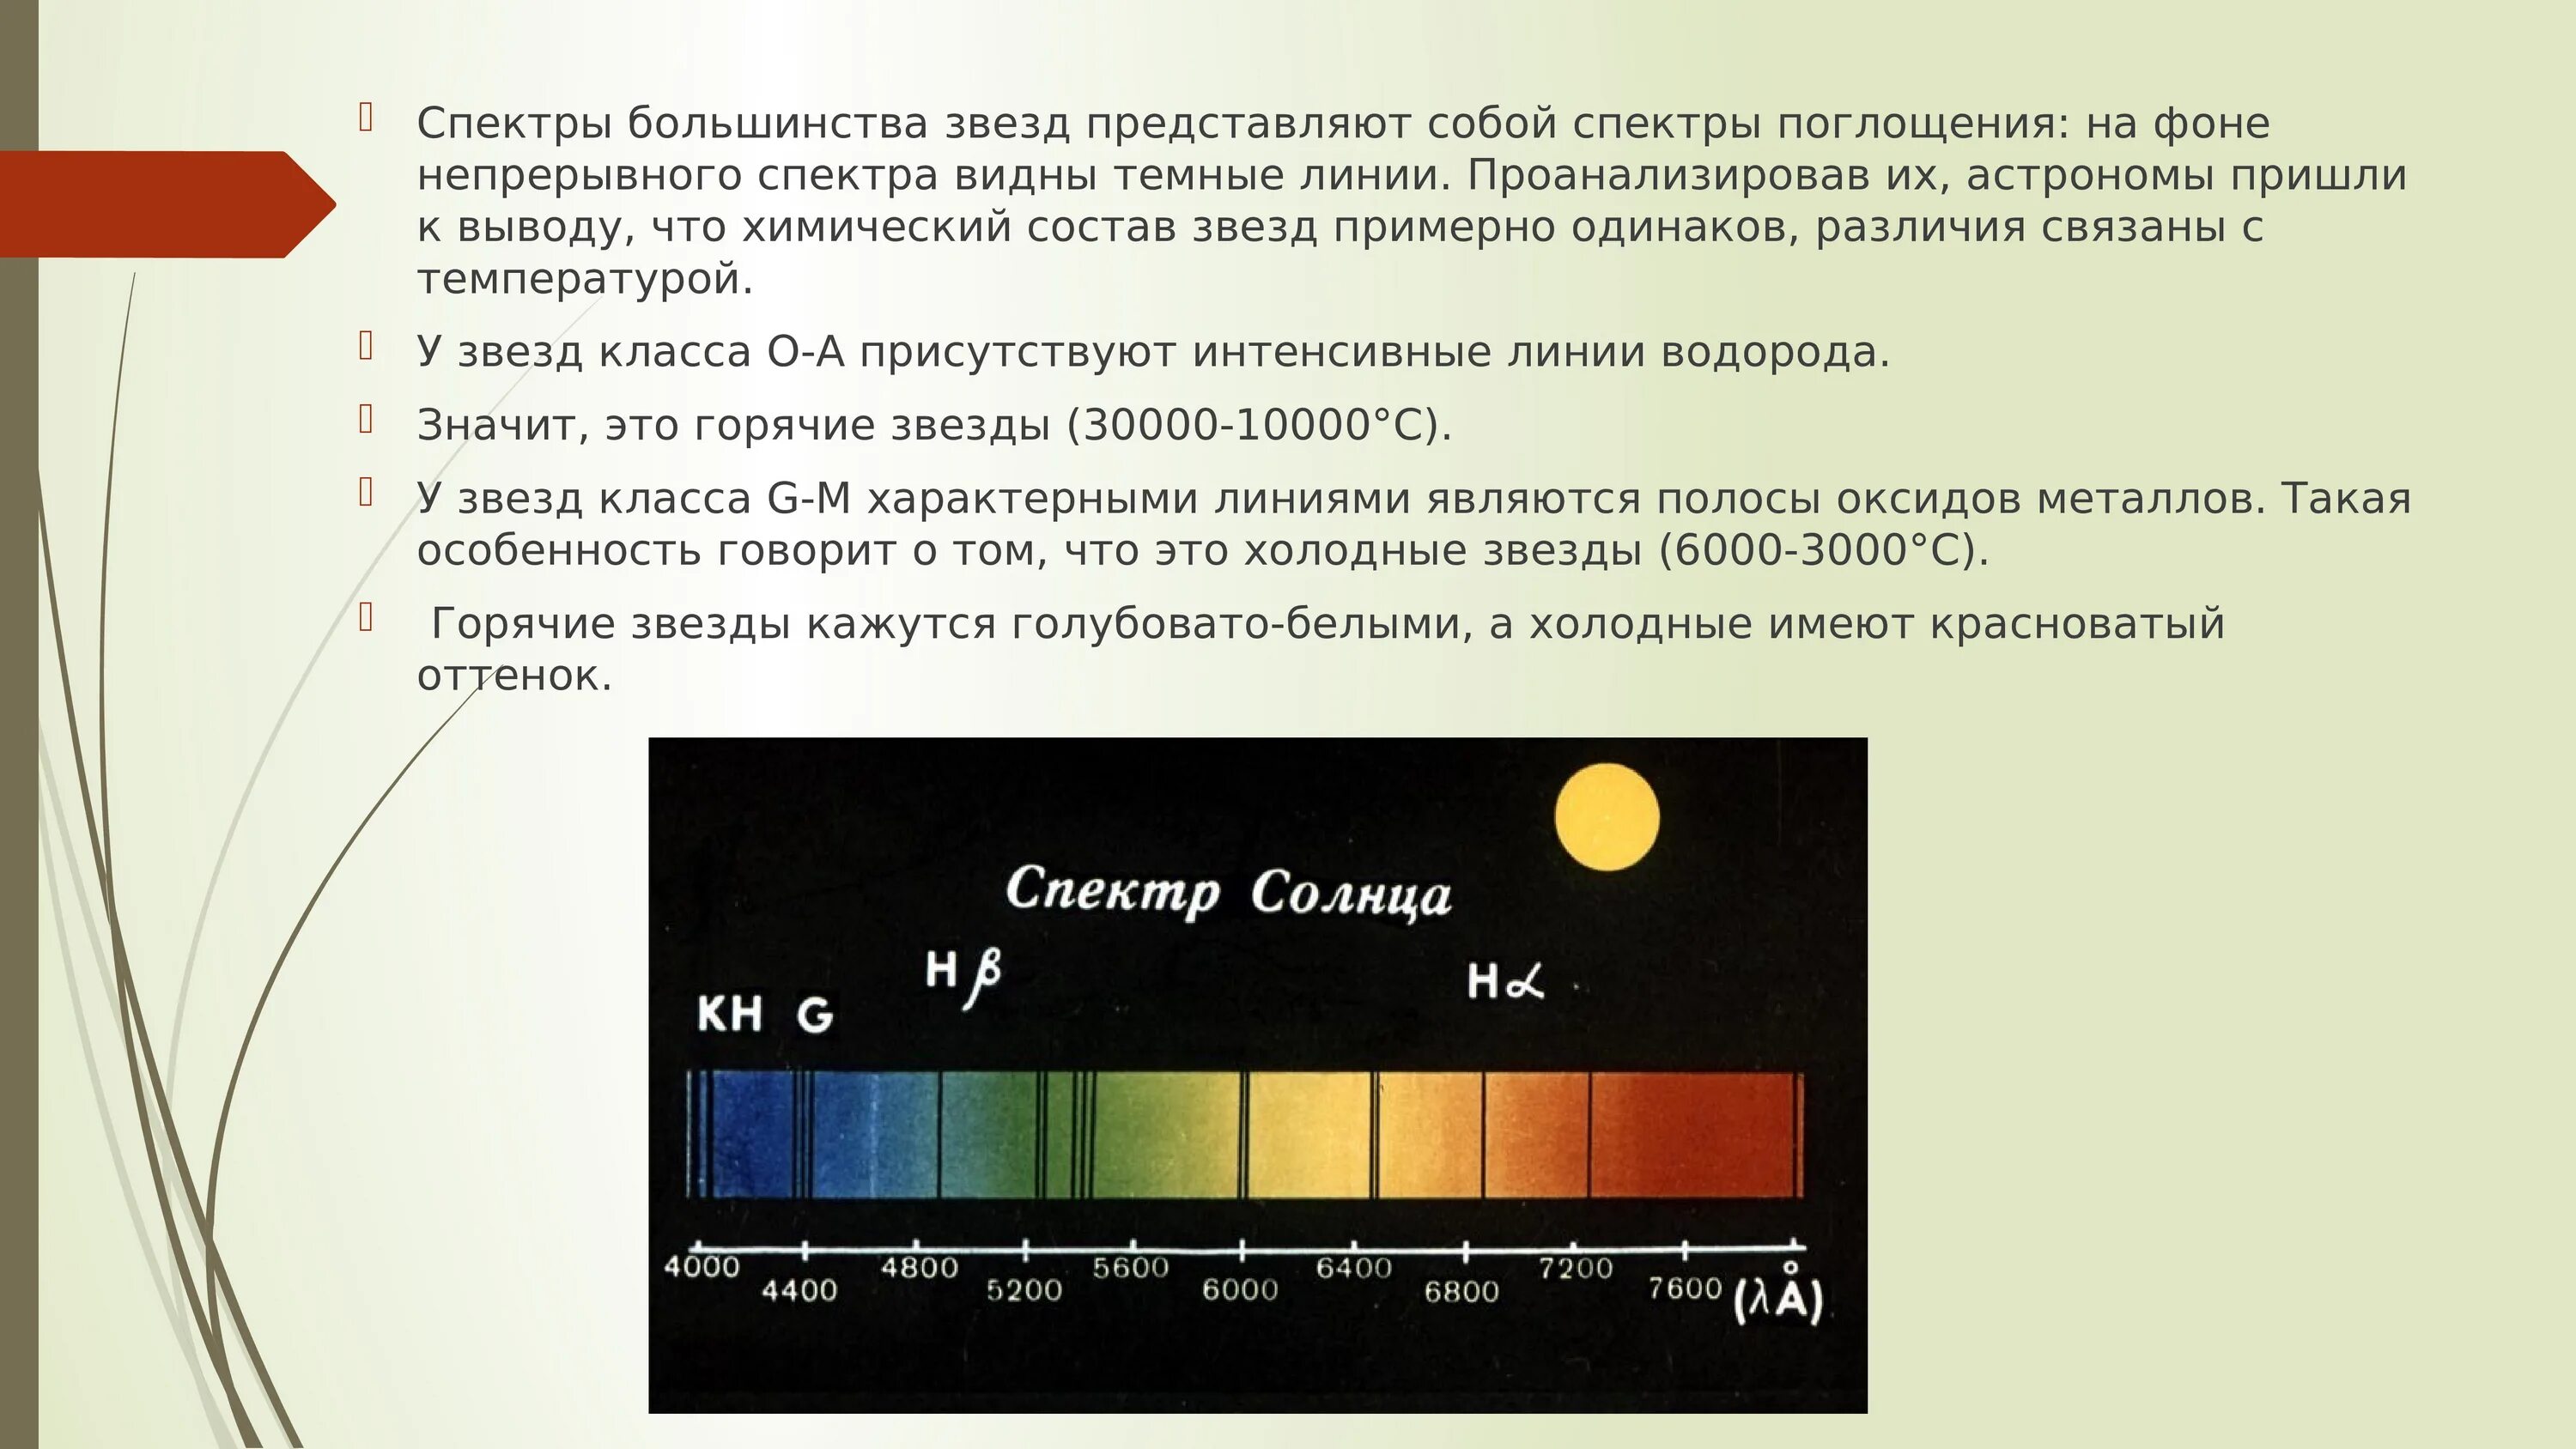 Спектральный класс звезд. Спектральная классификация звёзд. Спектральный класс солнца. Спектры звезд. Темные линии на фоне непрерывного спектра